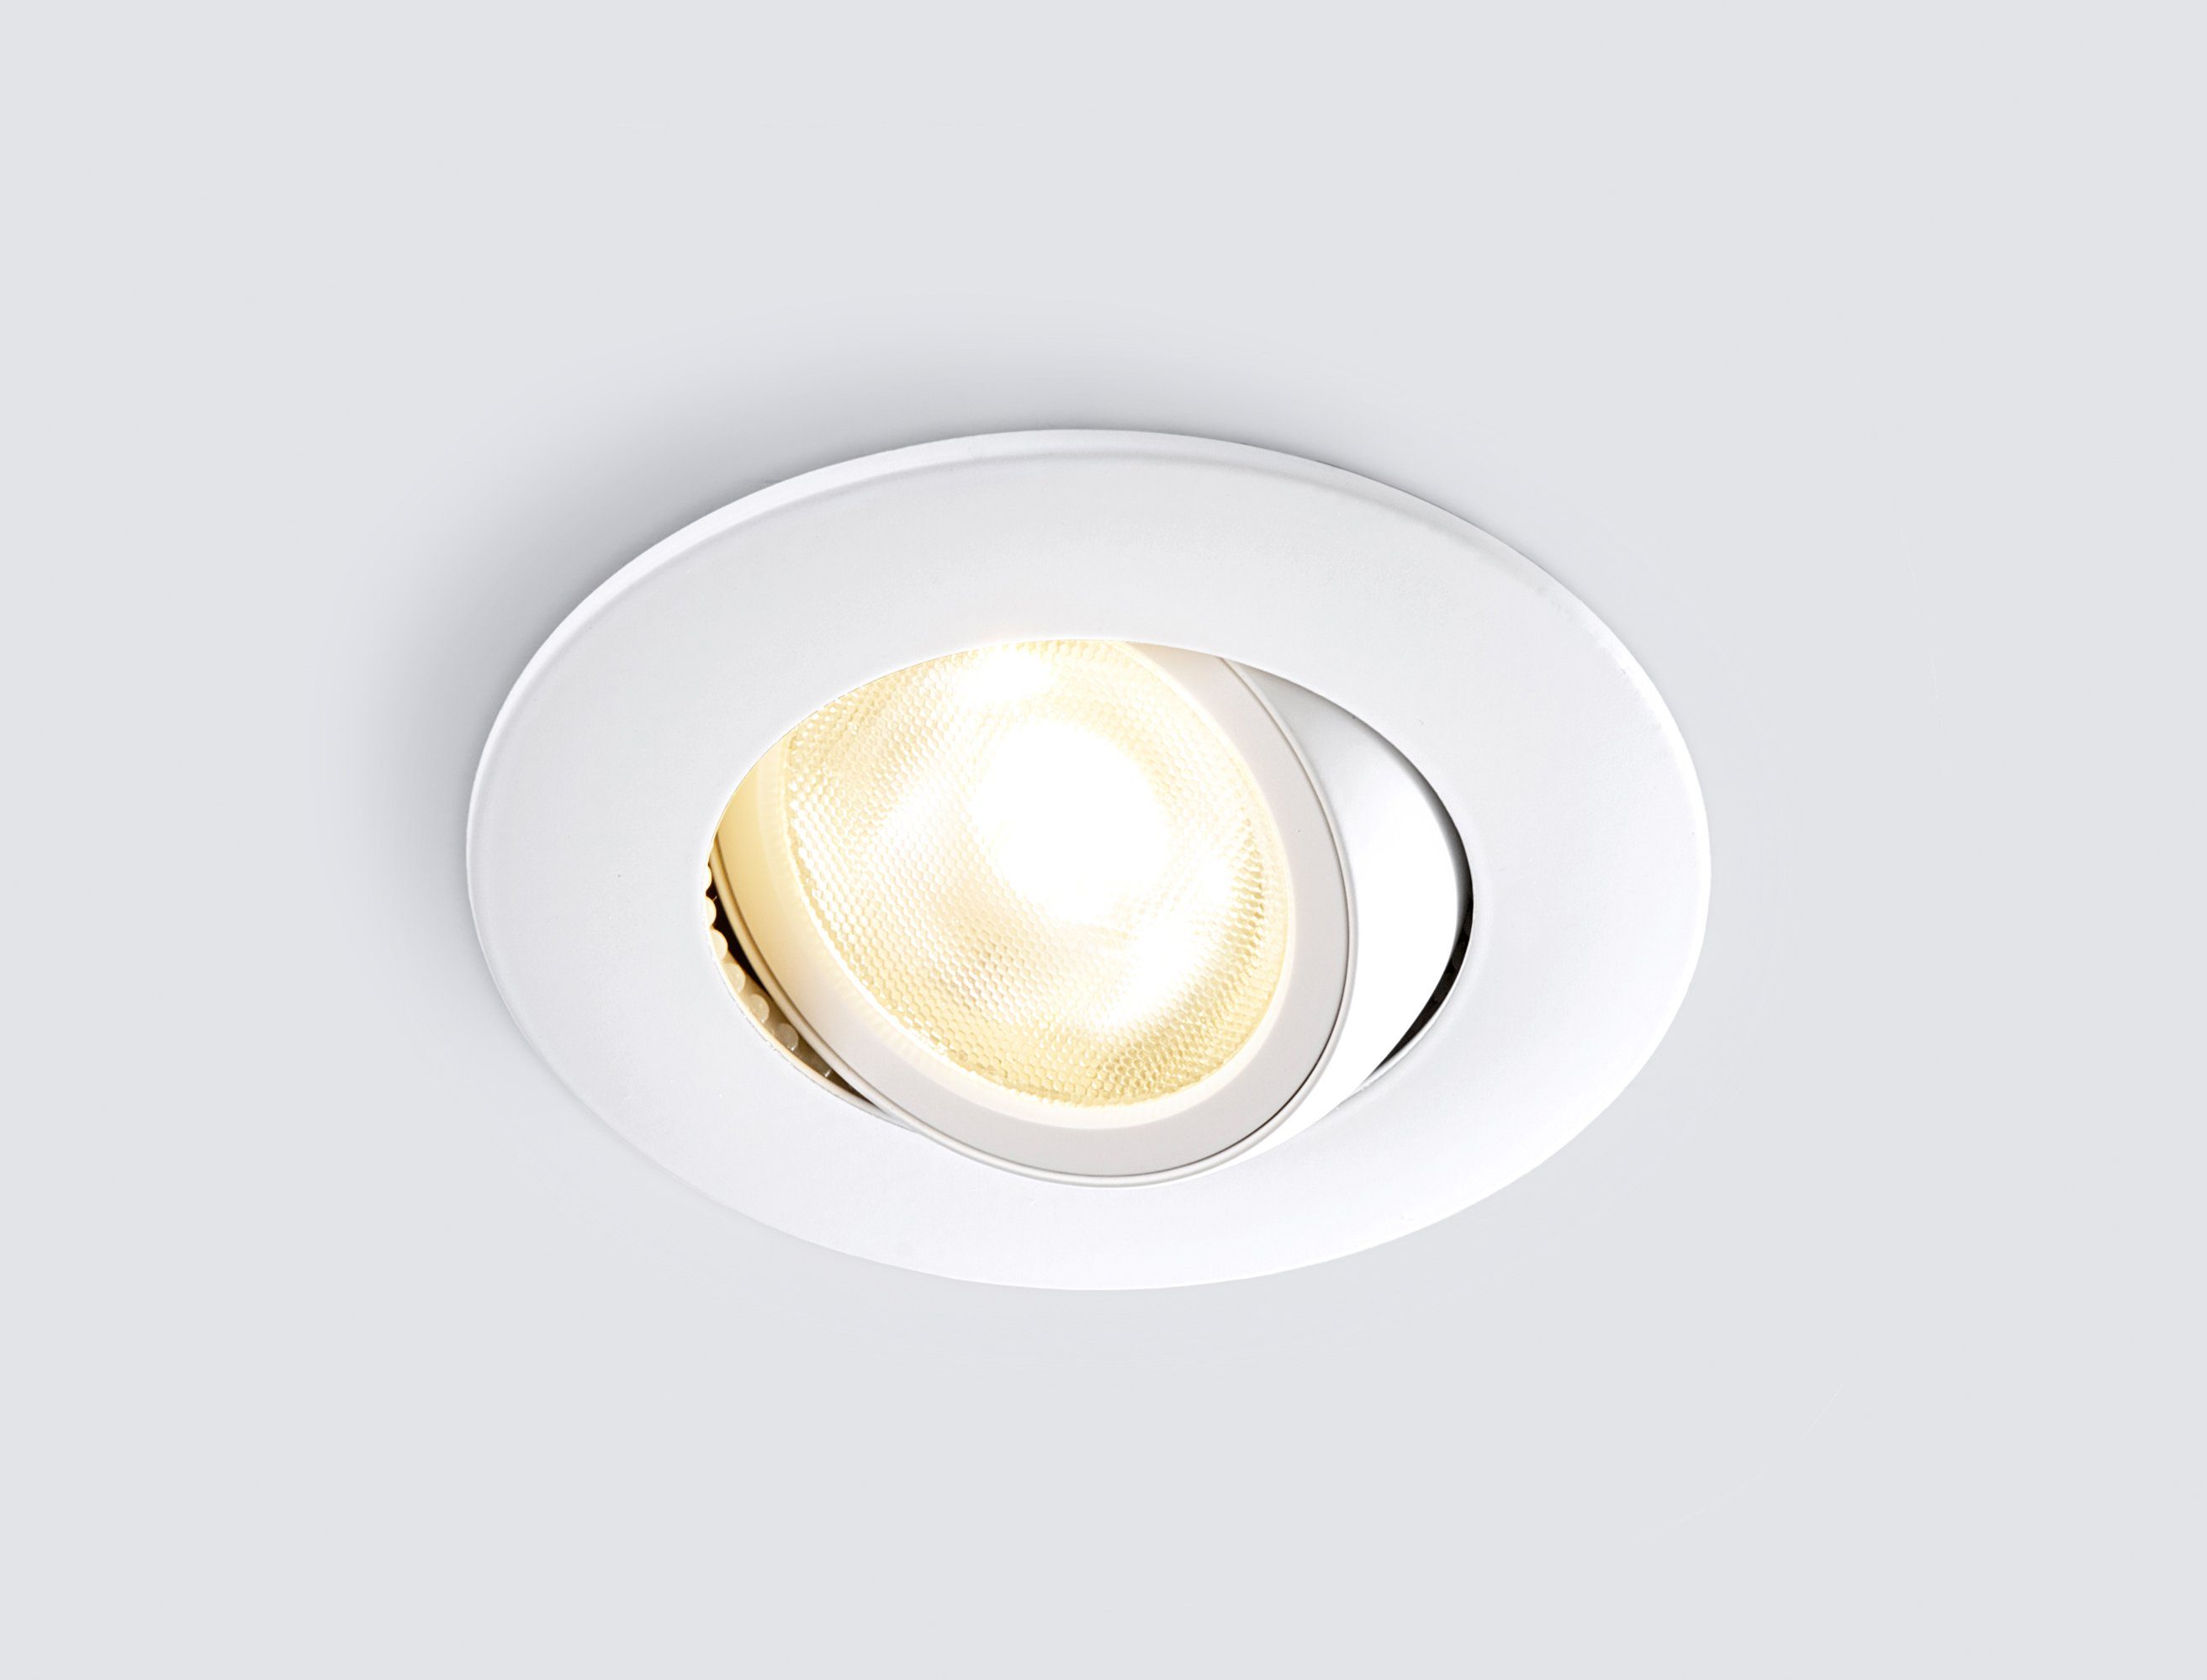 und Warmweiß, schwenk- fest LED Einbaustrahler HEITRONIC LED integriert, dimmbar Einbaulampe, Einbauleuchte, Dimmfunktion, DL8002, LED-Downlight,